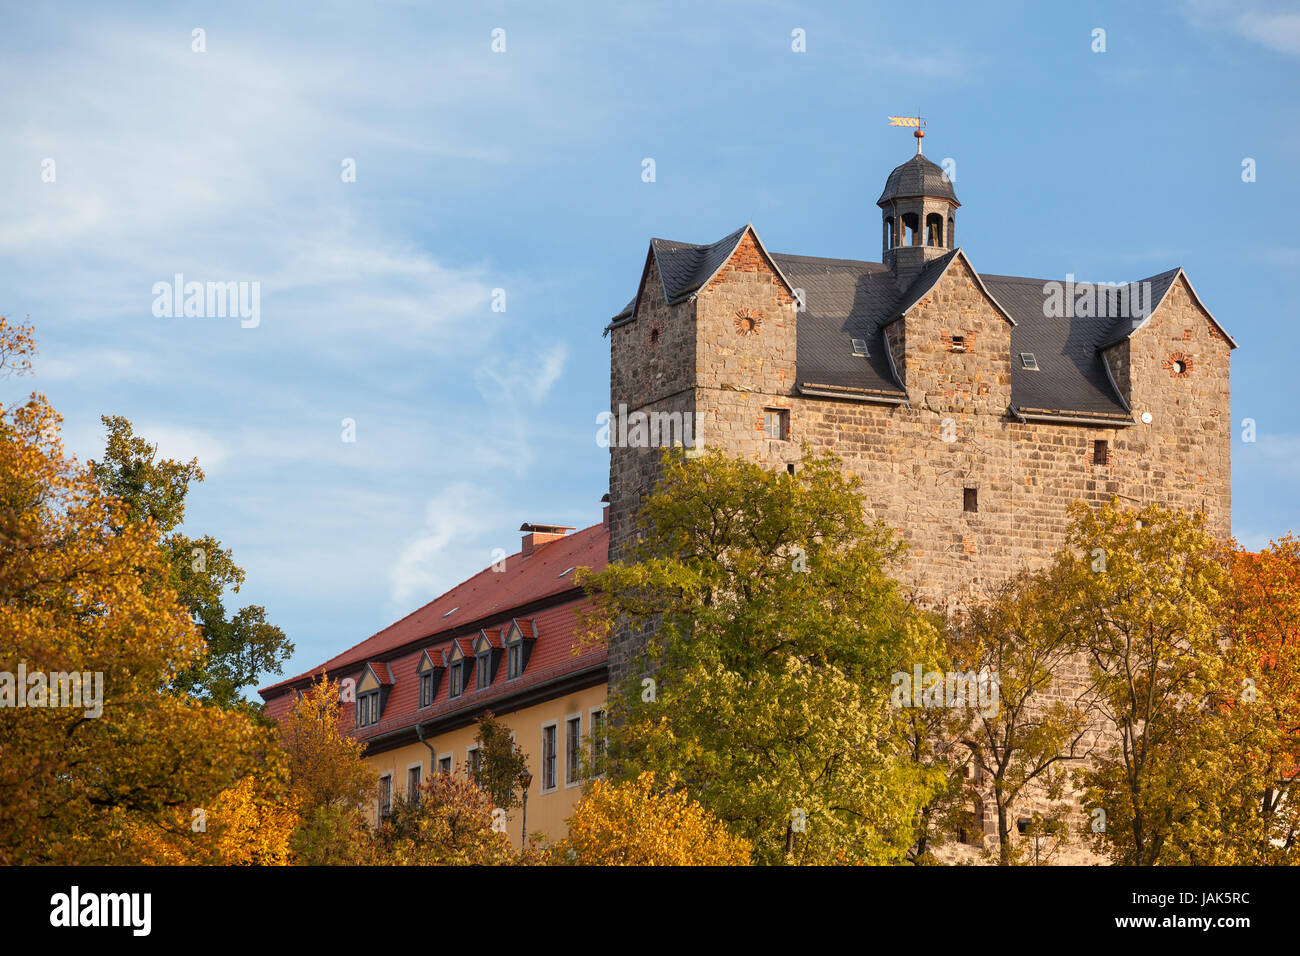 Schlosspark mit dem Schloss Ballenstedt im Herbst Foto Stock